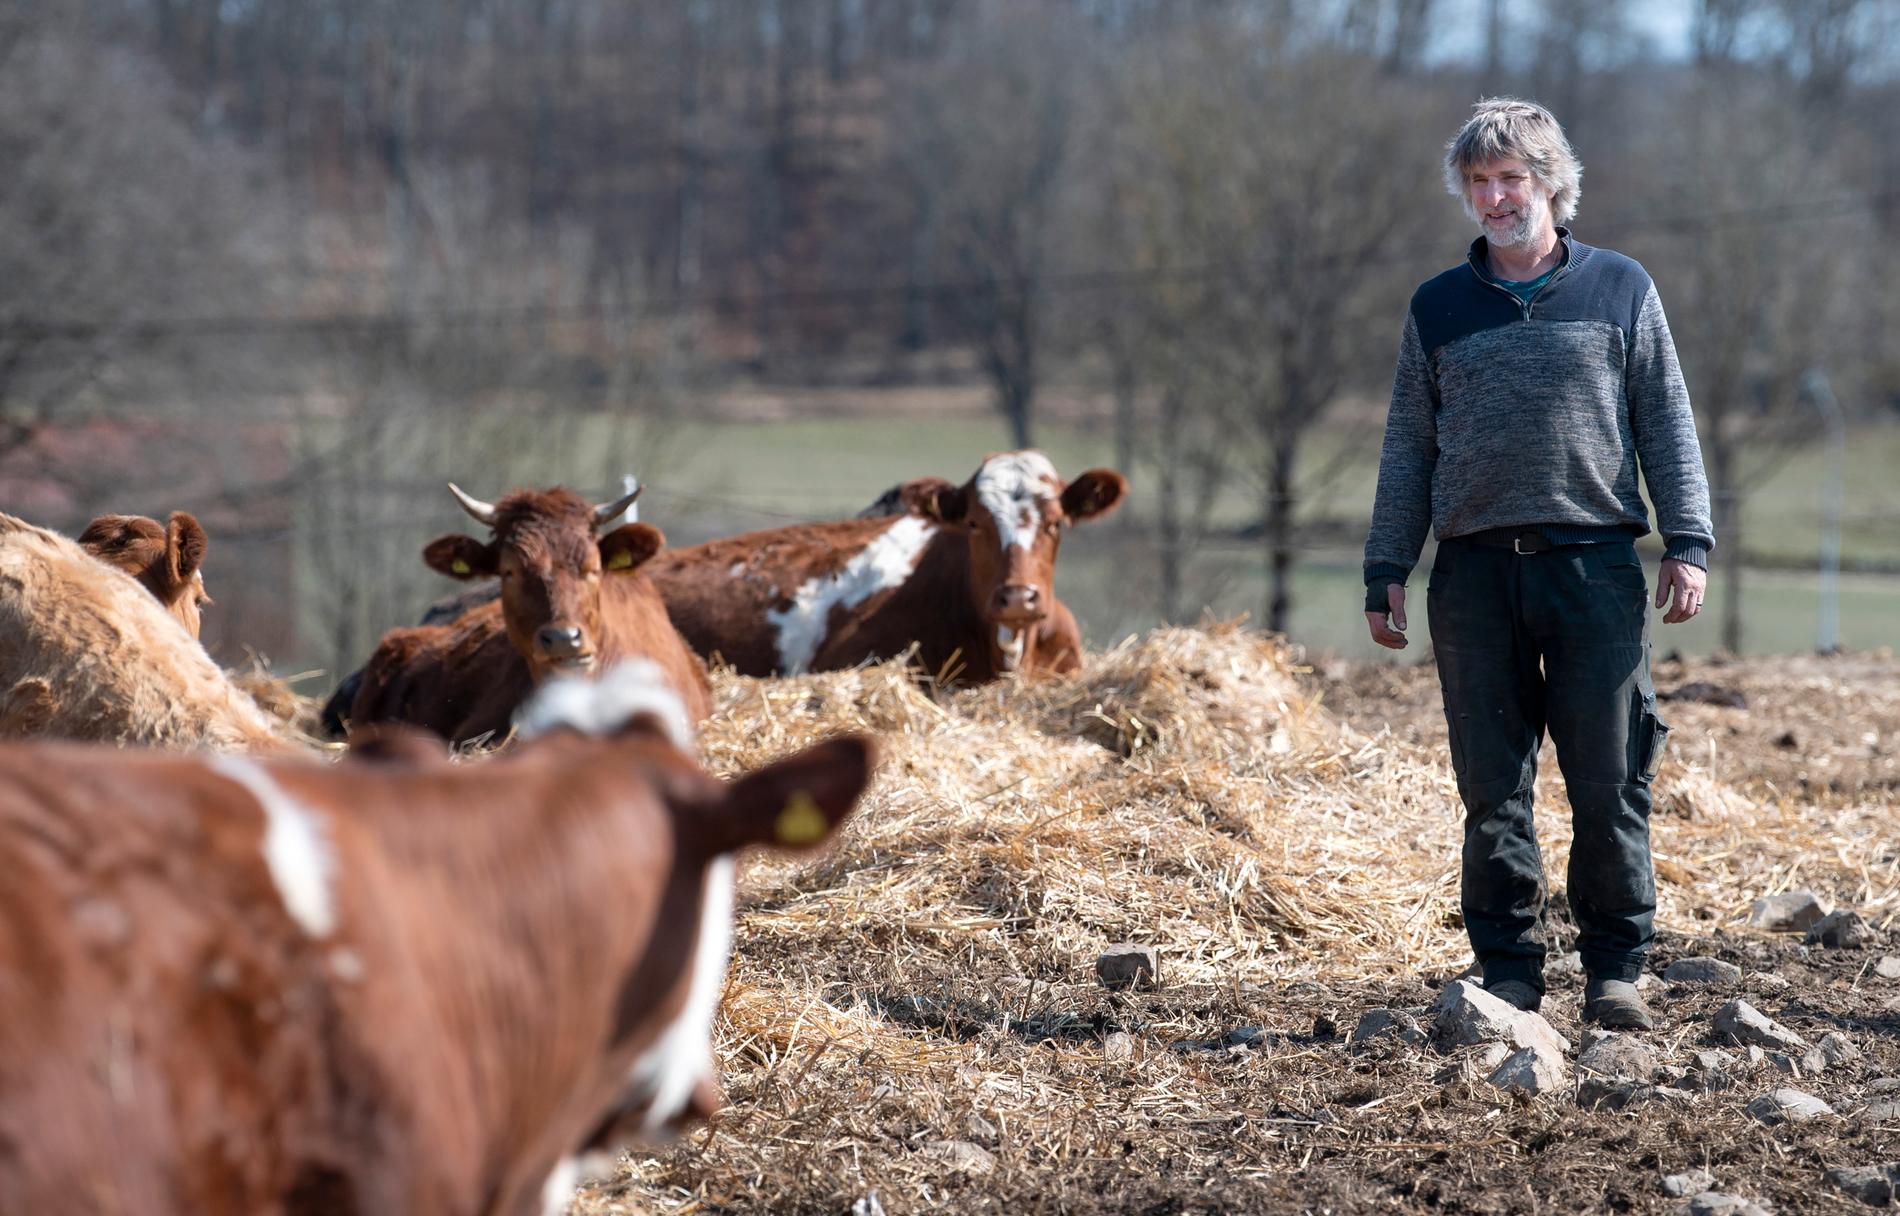 Redan som 15-åring sådde Magnus Nyman sitt första spannmål. Sedan 1995 kör han strikt ekologiskt och har grisar och ett tjugotal lantkor av rasen Simmental på sin gård.